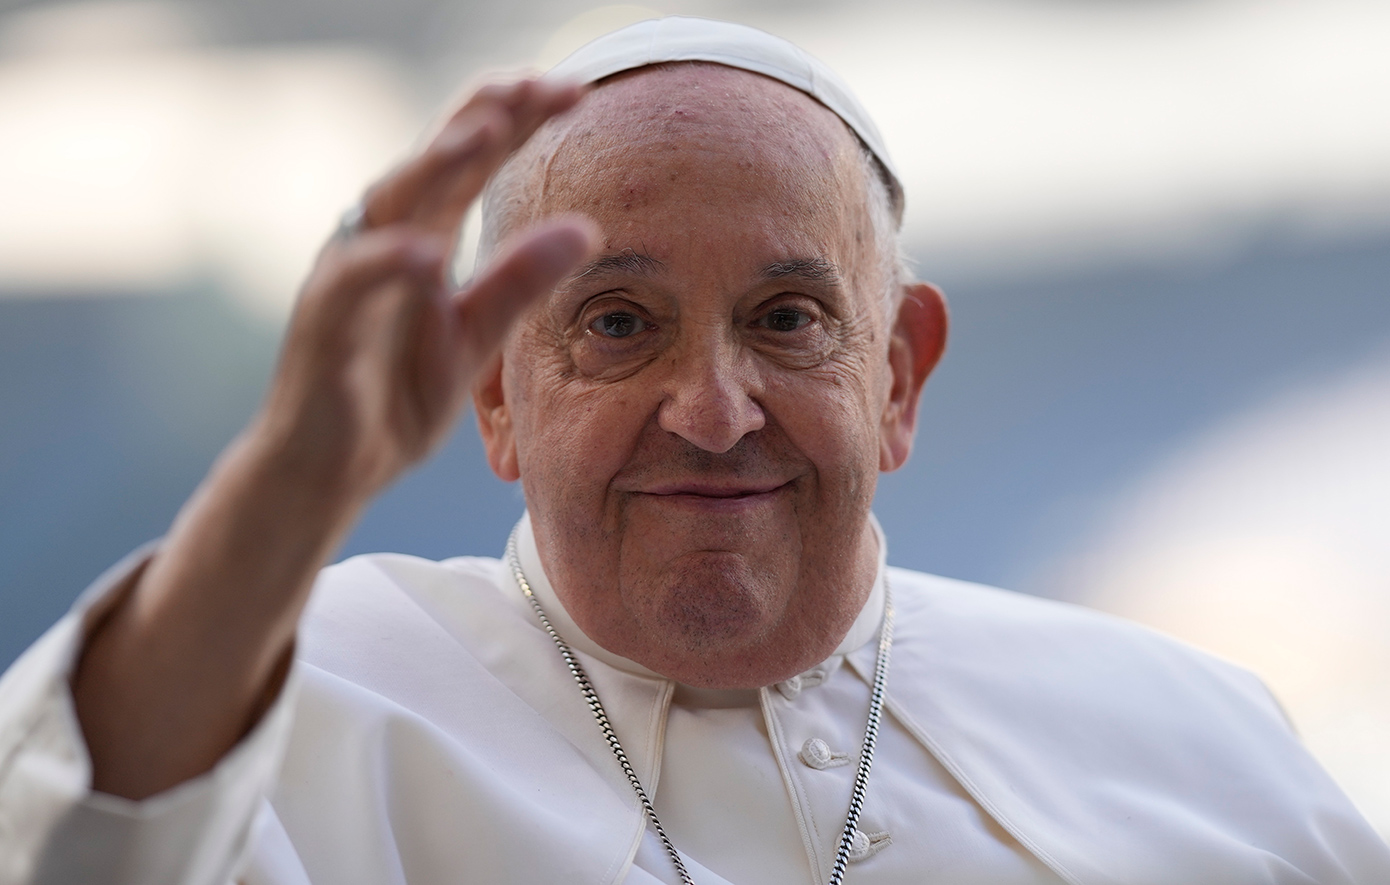 Σάλος με προσβλητικό όρο που χρησιμοποίησε ο Πάπας Φραγκίσκος για τους ομοφυλόφιλους